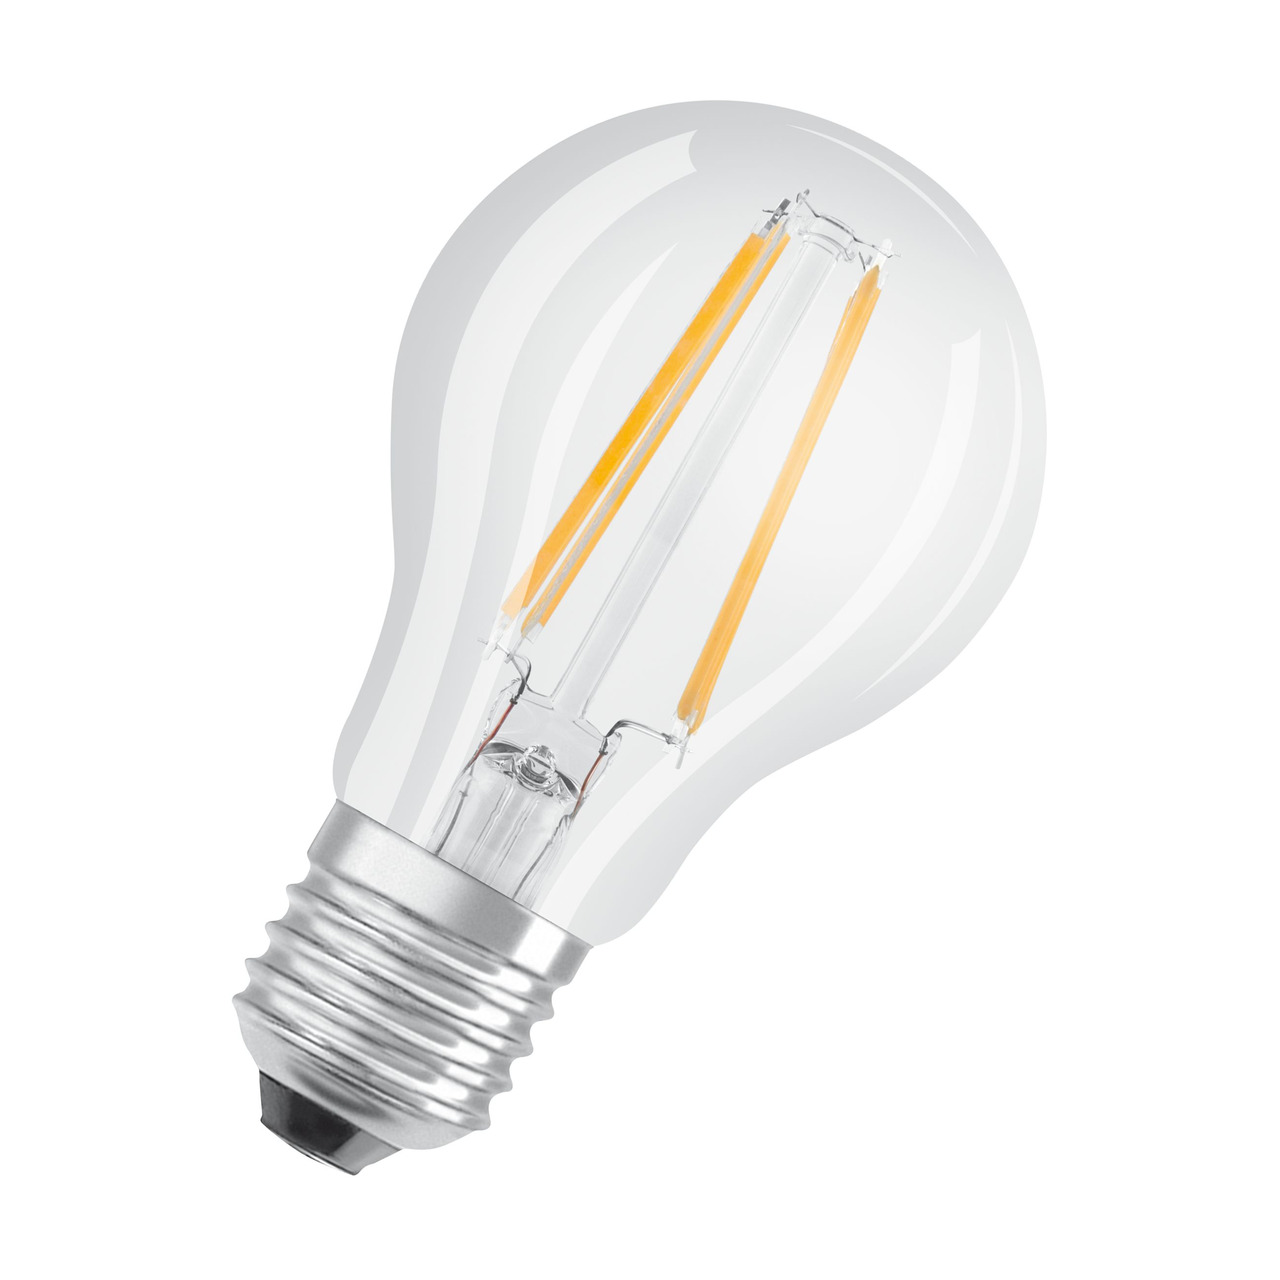 OSRAM 7-W-LED-Lampe A60- E27- 806 lm- warmweiss - neutralweiss- klar unter Beleuchtung